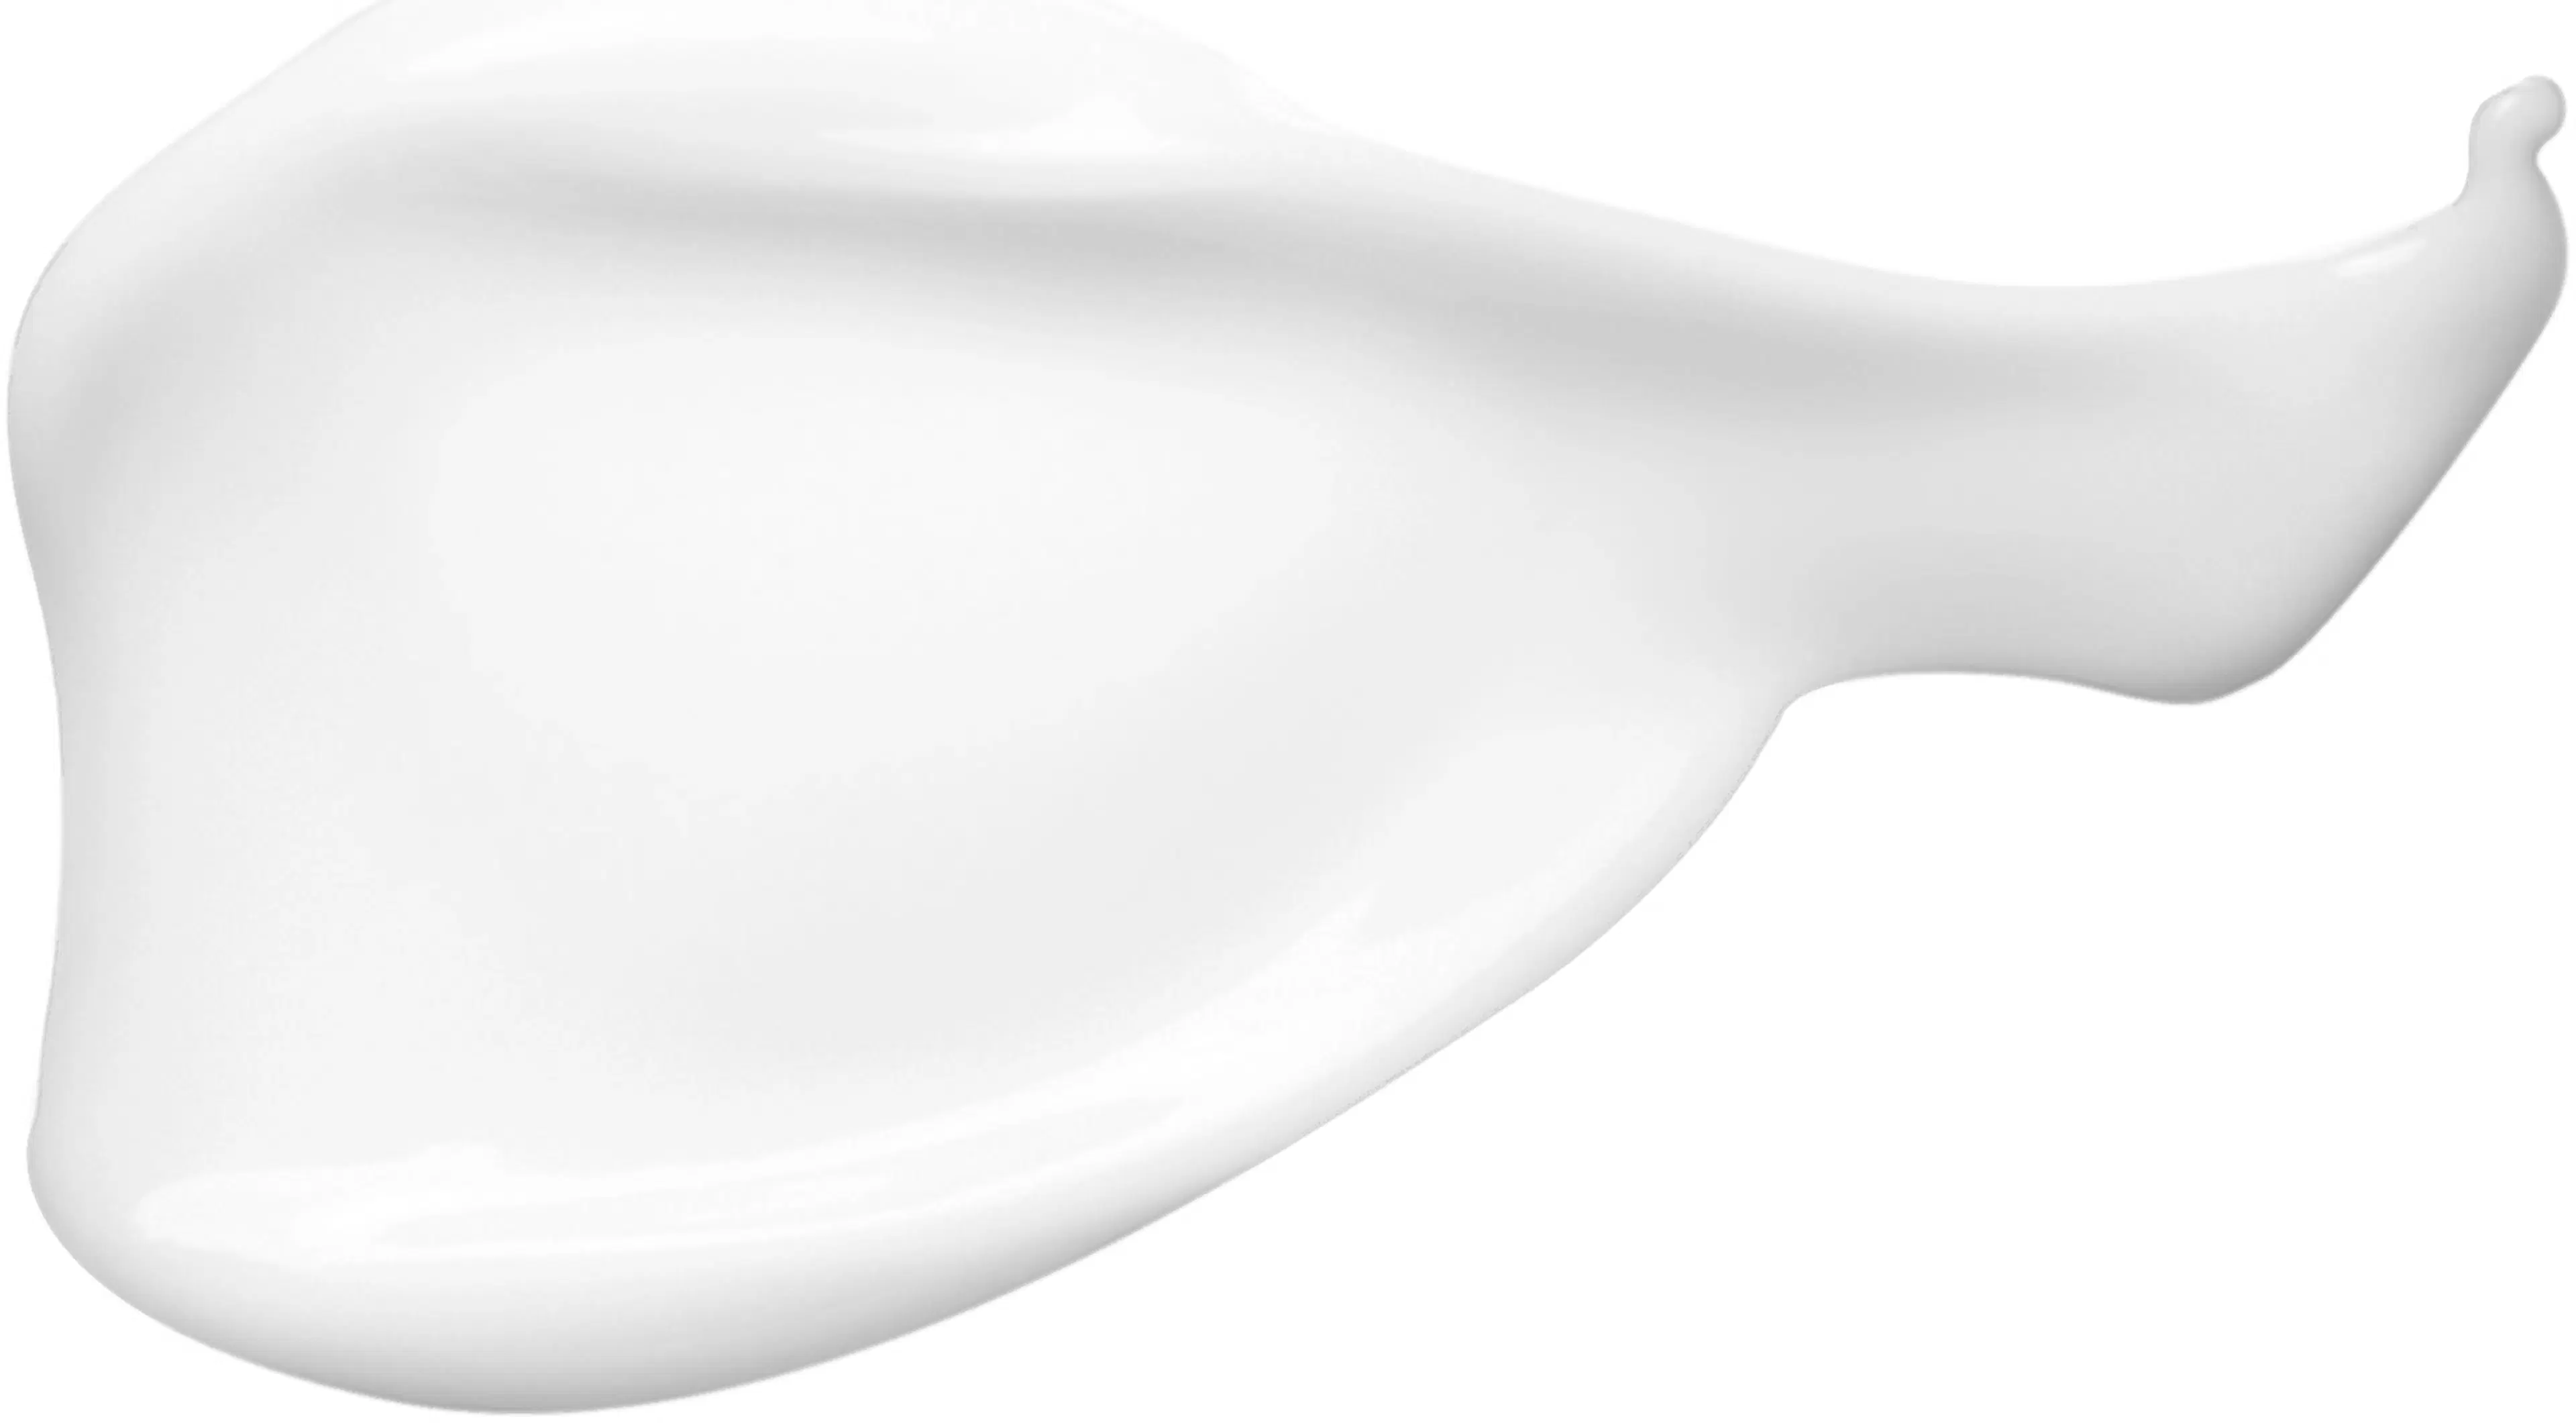 Clarins Body-Smoothing Moisture Milk vartalovoide 400 ml